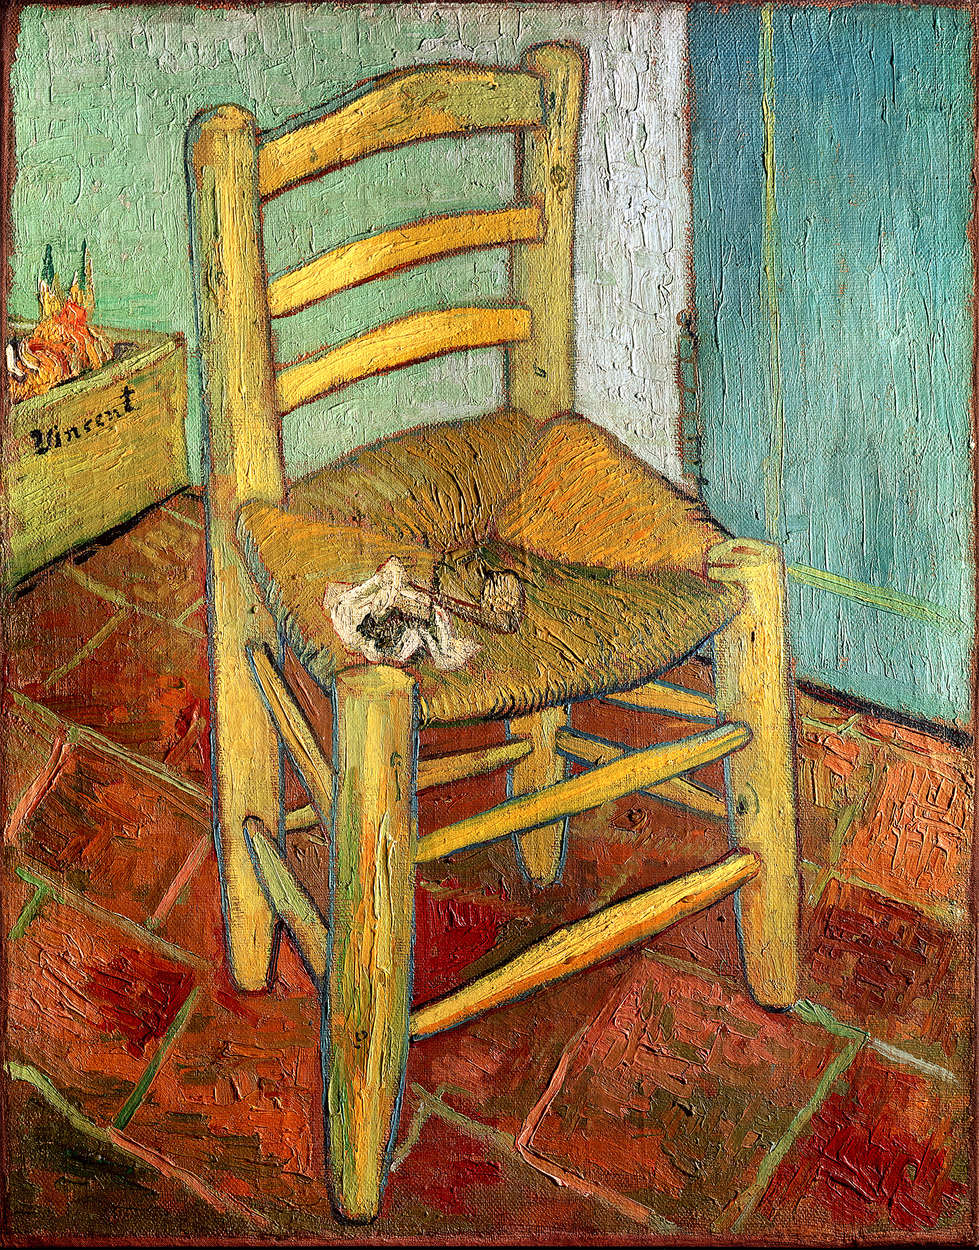             Papier peint panoramique "La chaise de Vincent" de Vincent van Gogh
        